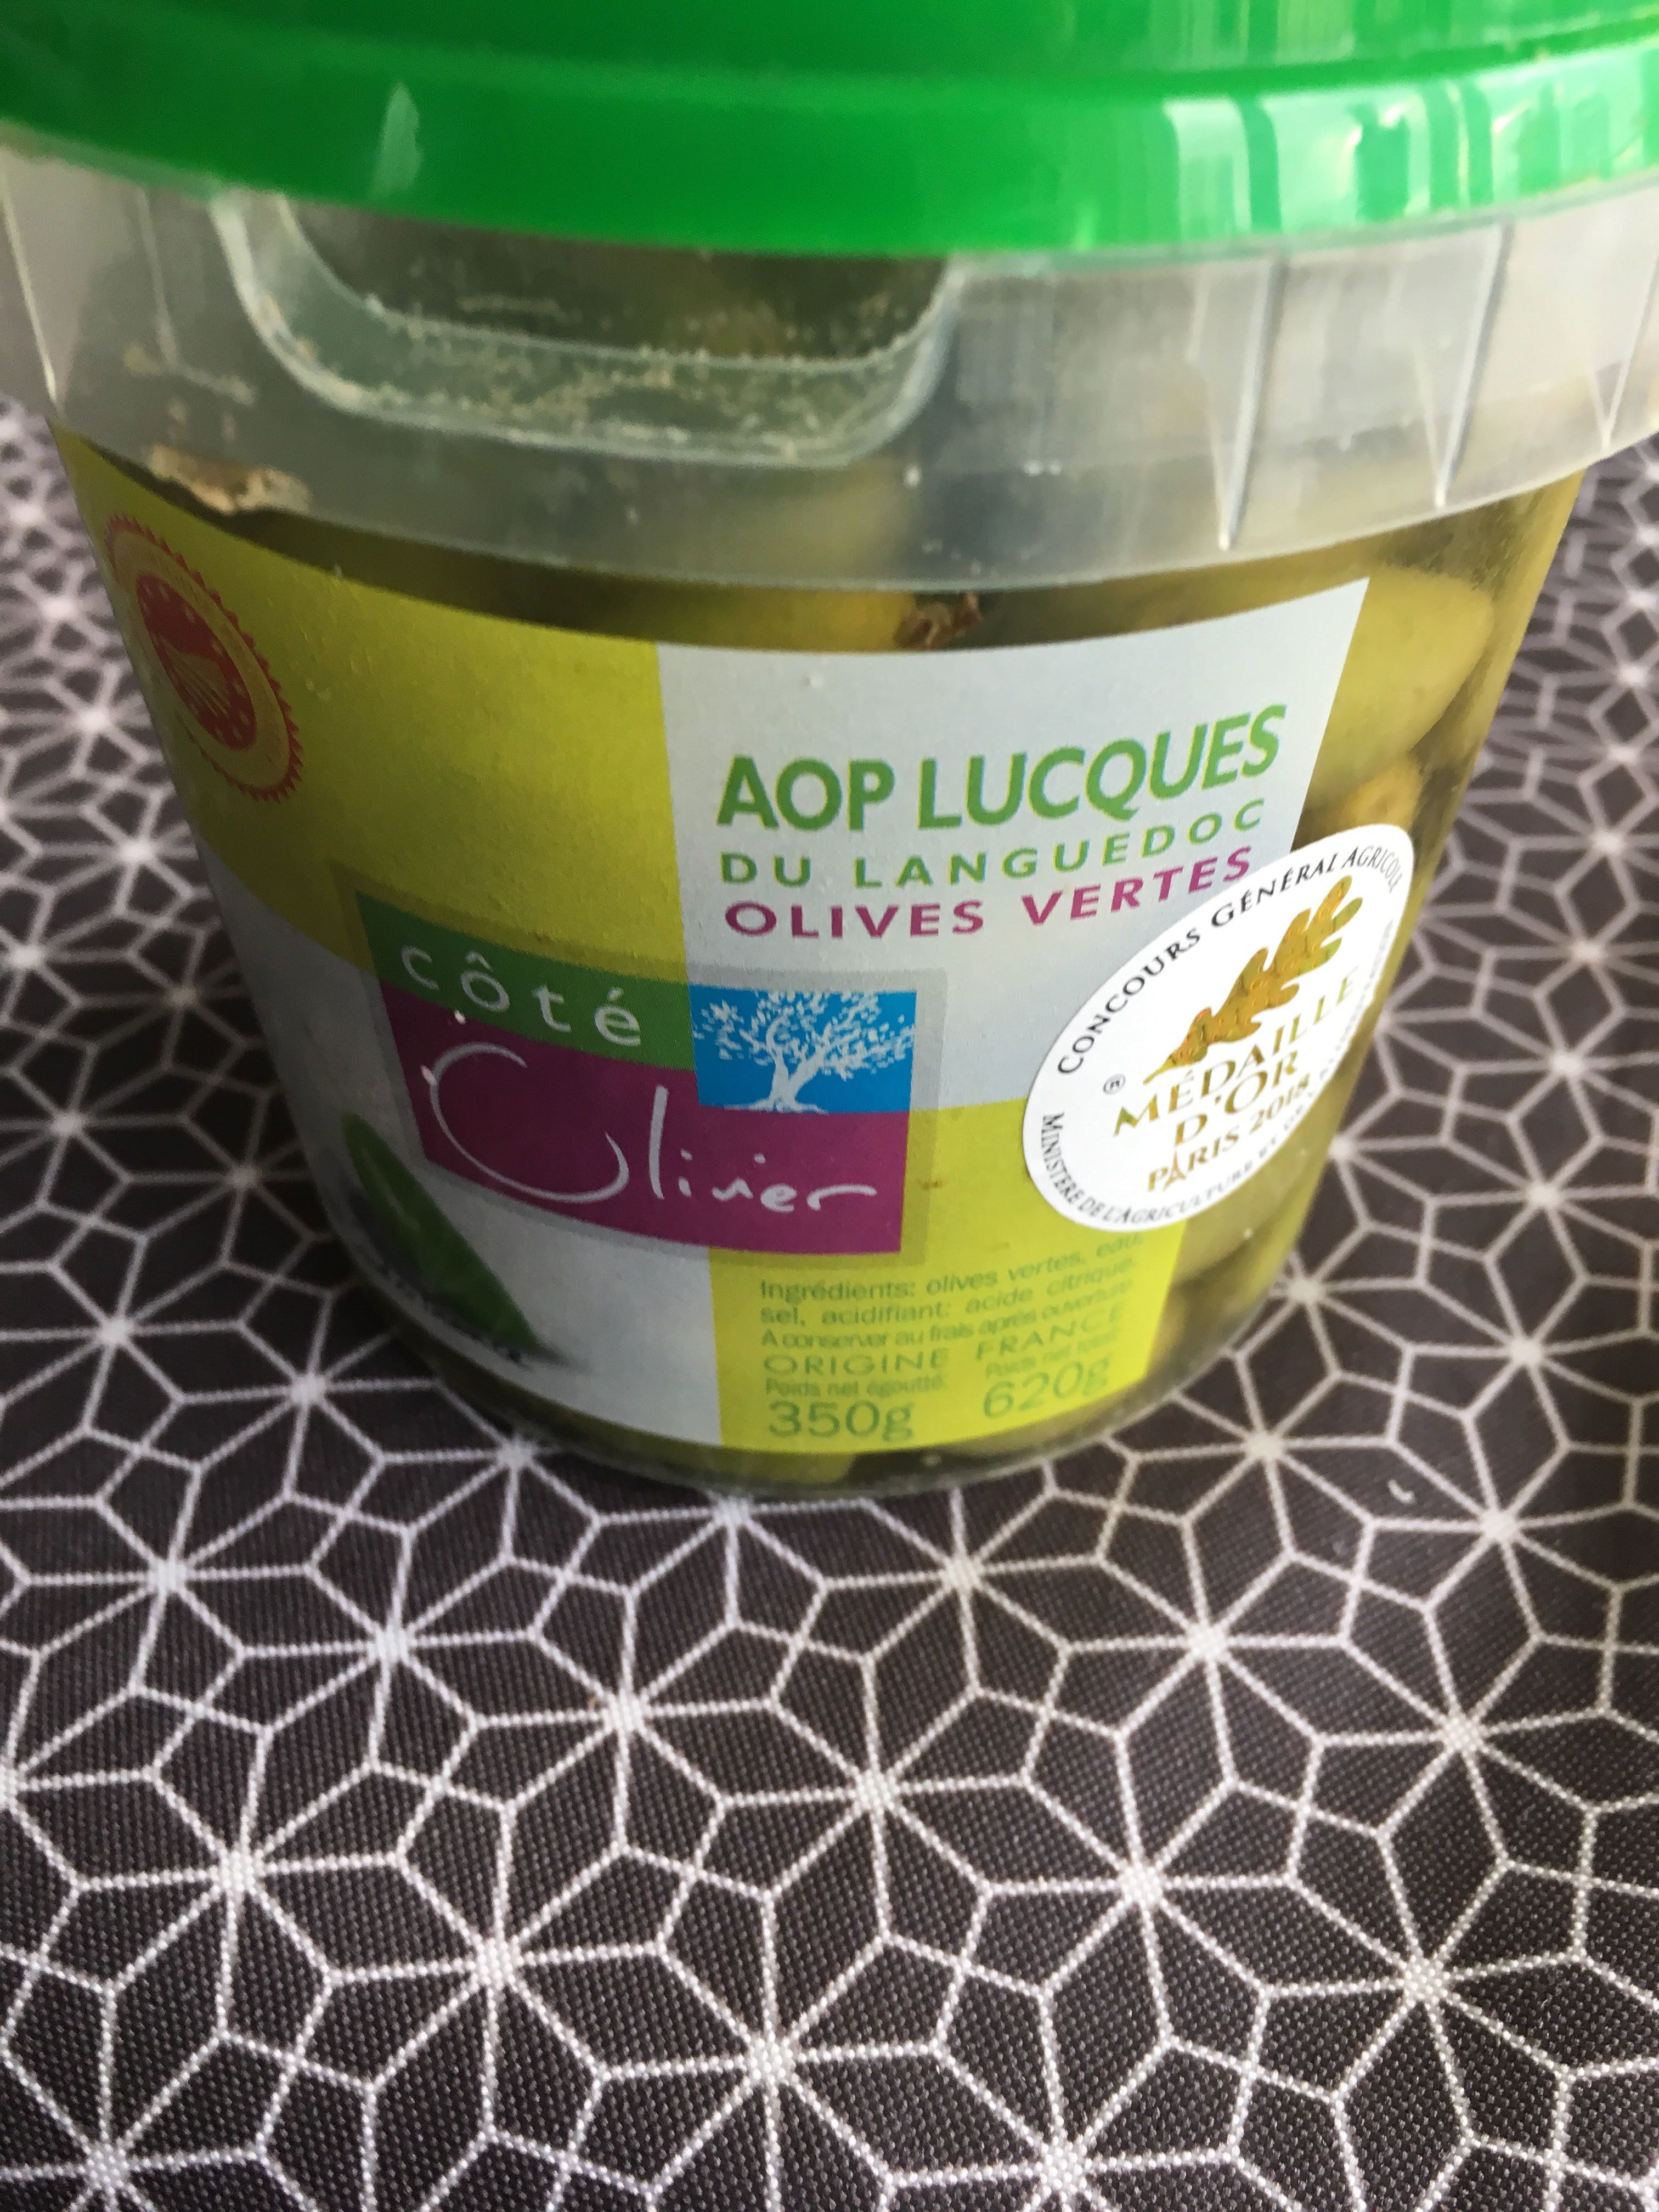 Olives vertes lucque seau - Product - fr